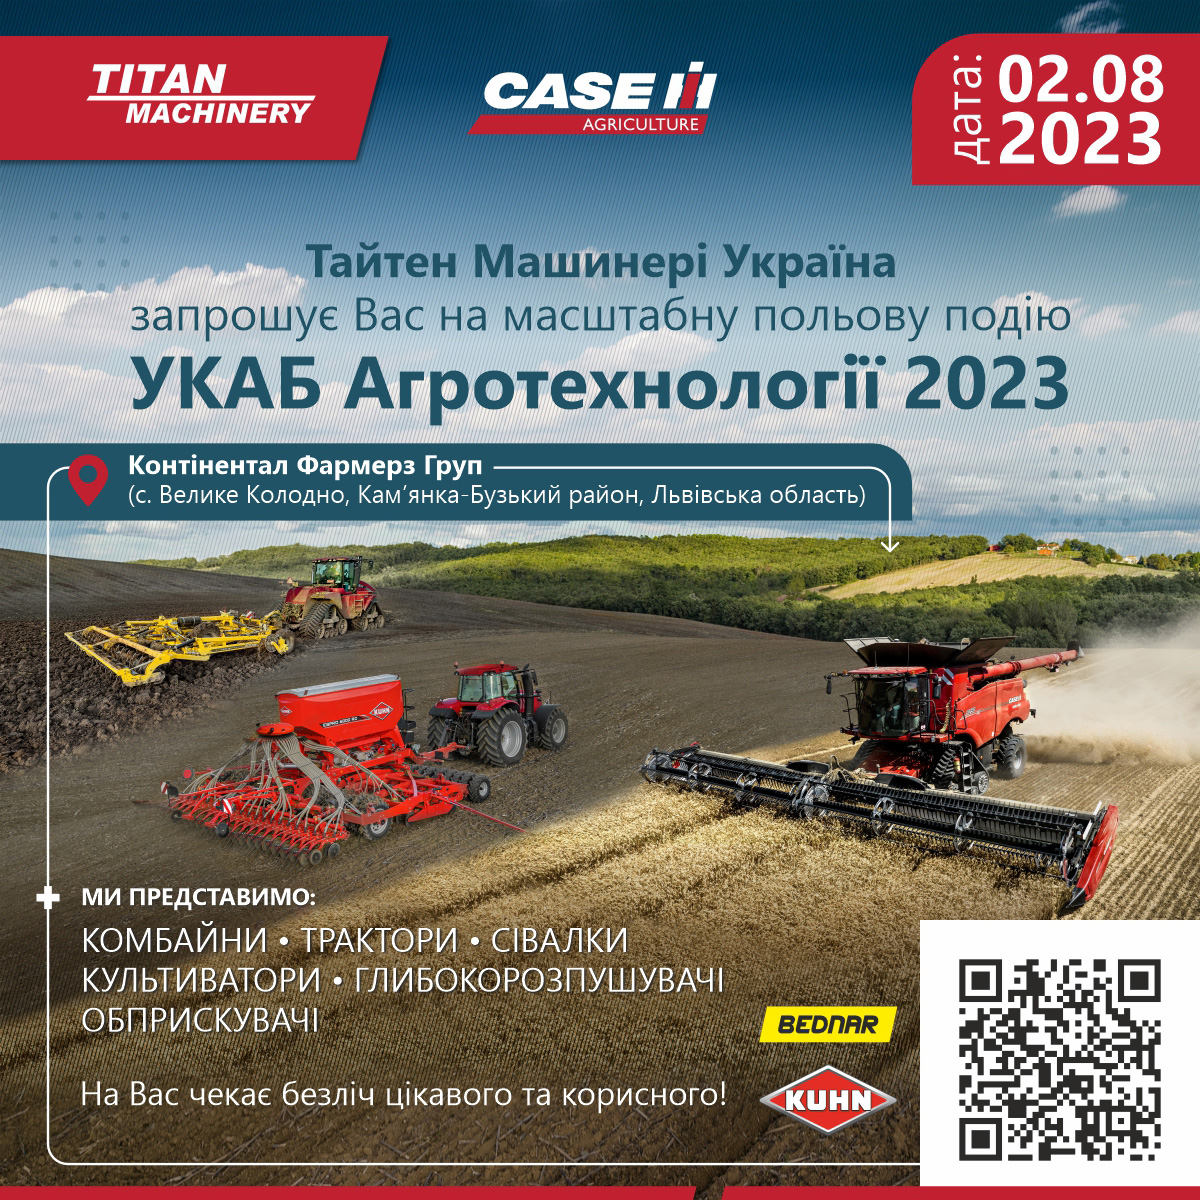 Тайтен Машинері Україна запрошує на День поля УКАБ Агротехнології 2023